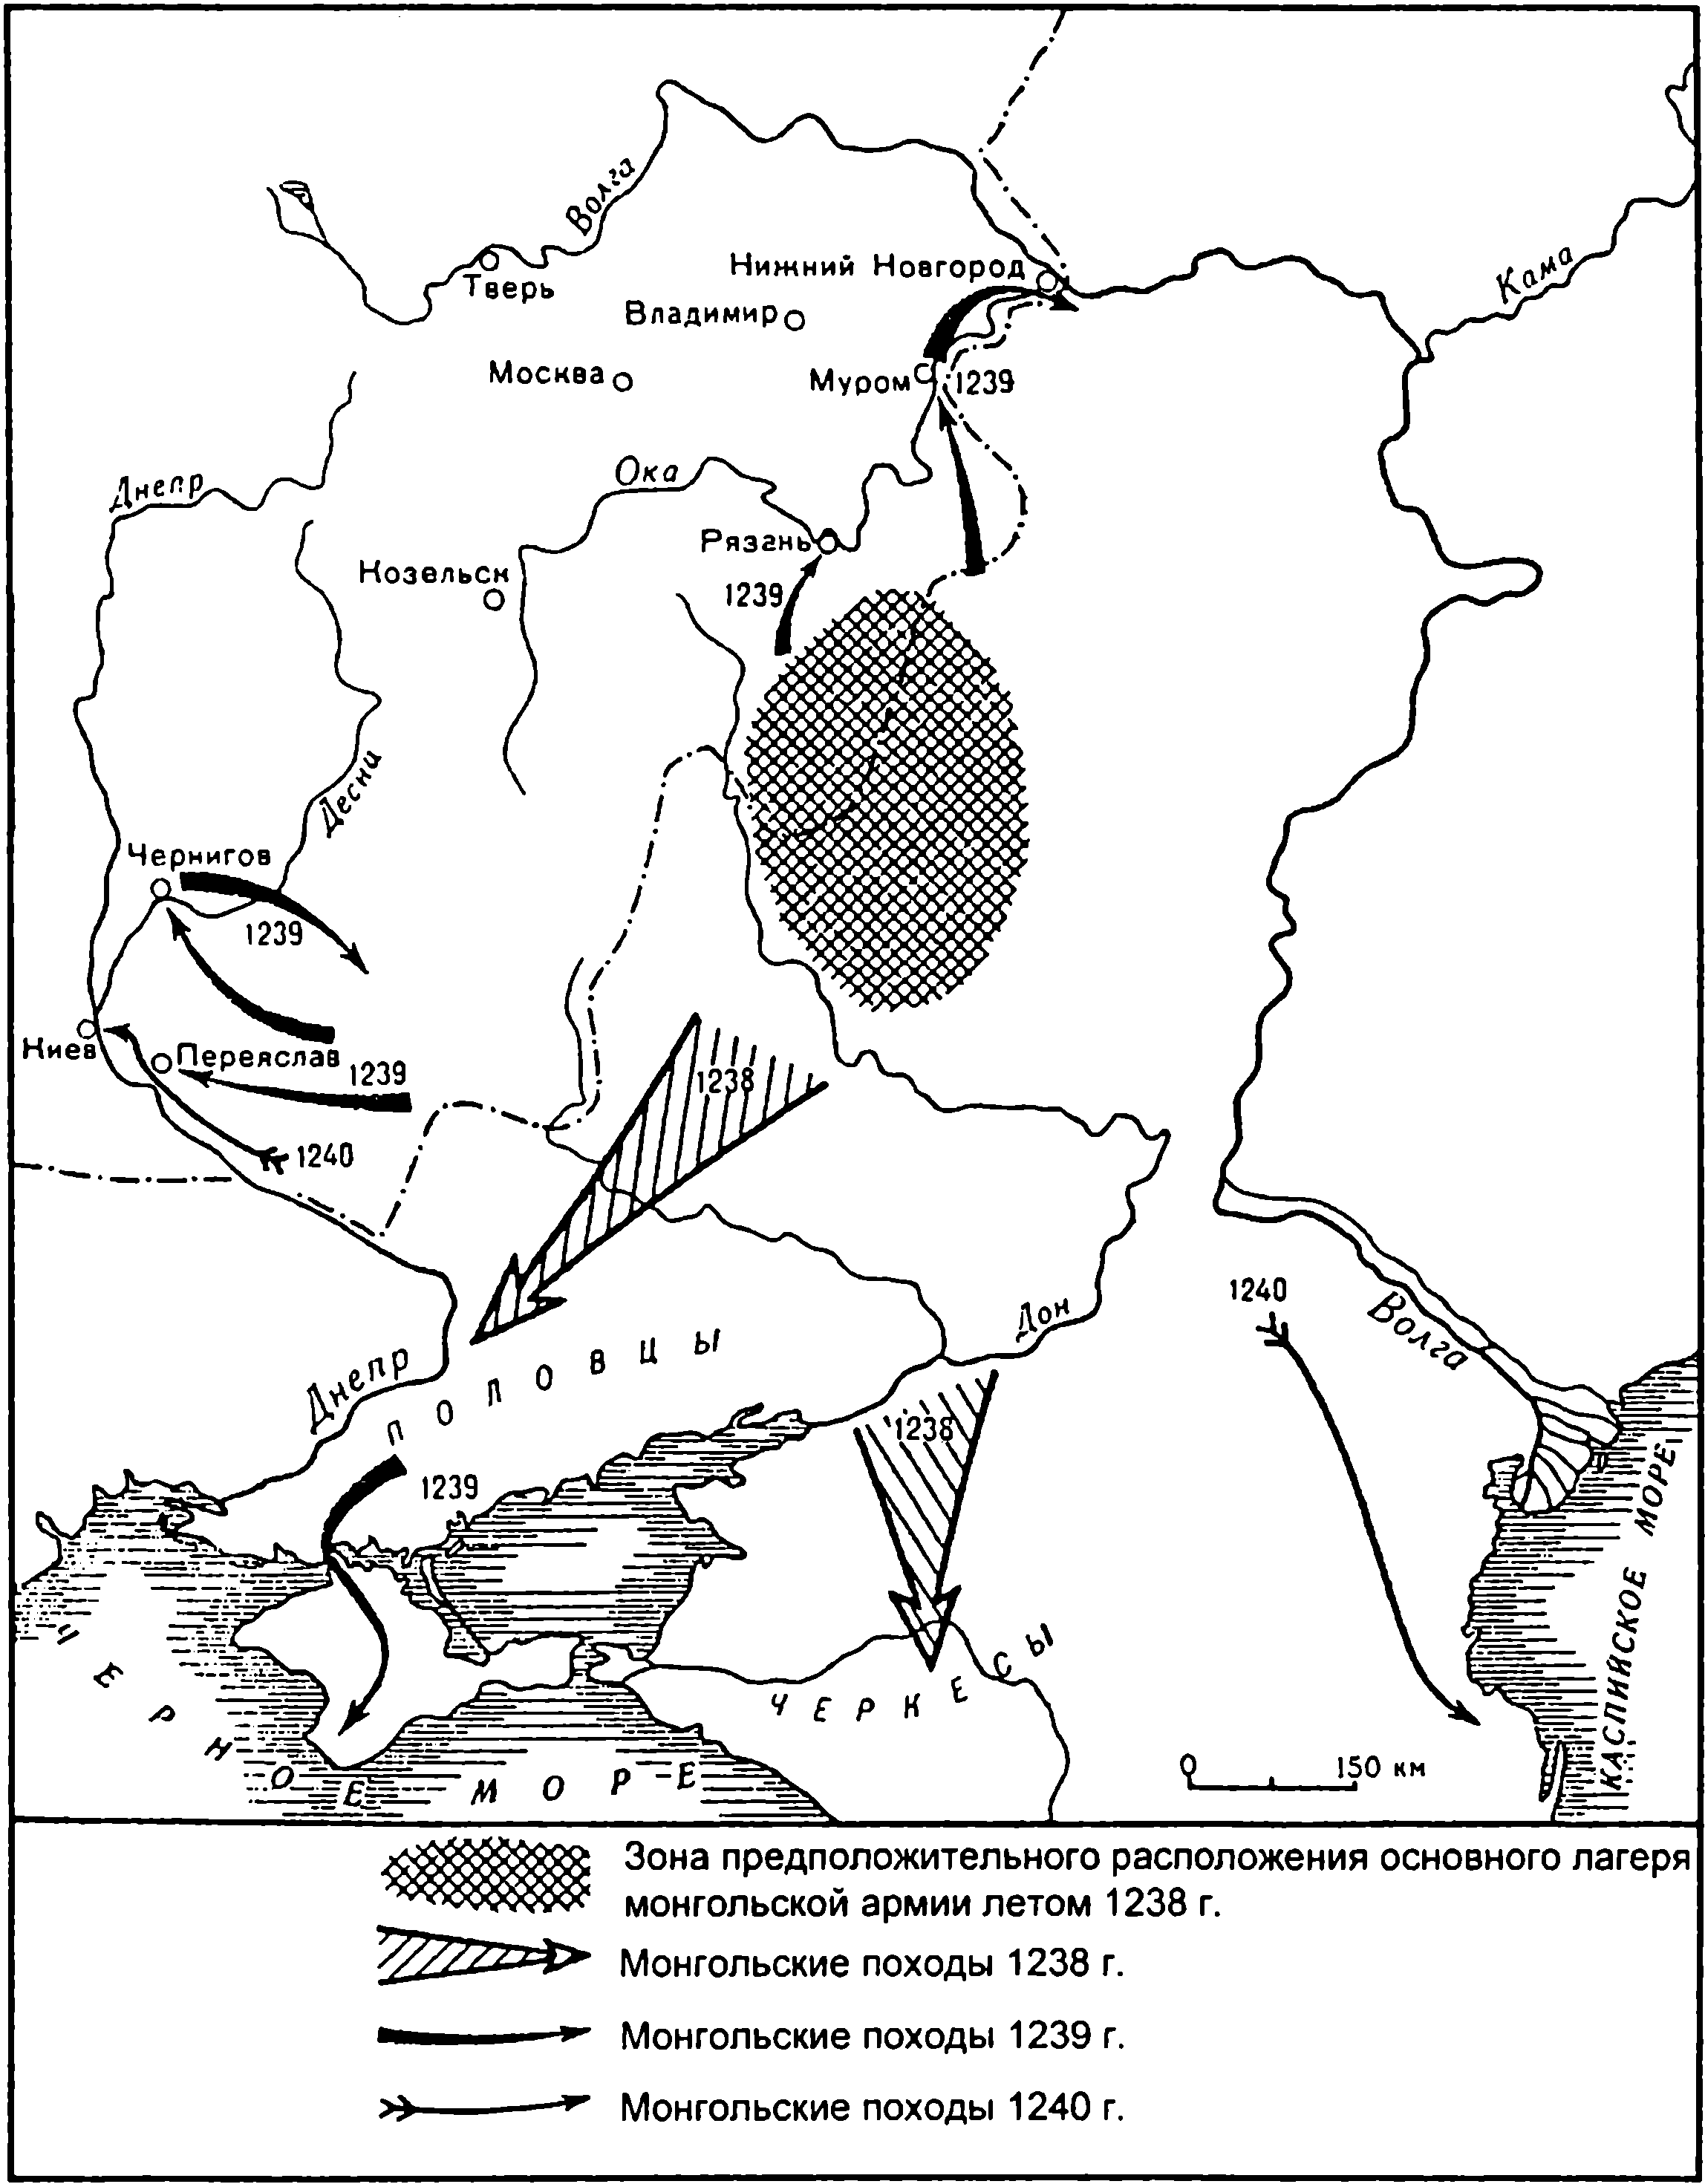 Монголы в степях Дешт-и-Кипчак. 1238—1240 гг. (Каргалов, 1967. С. 115)